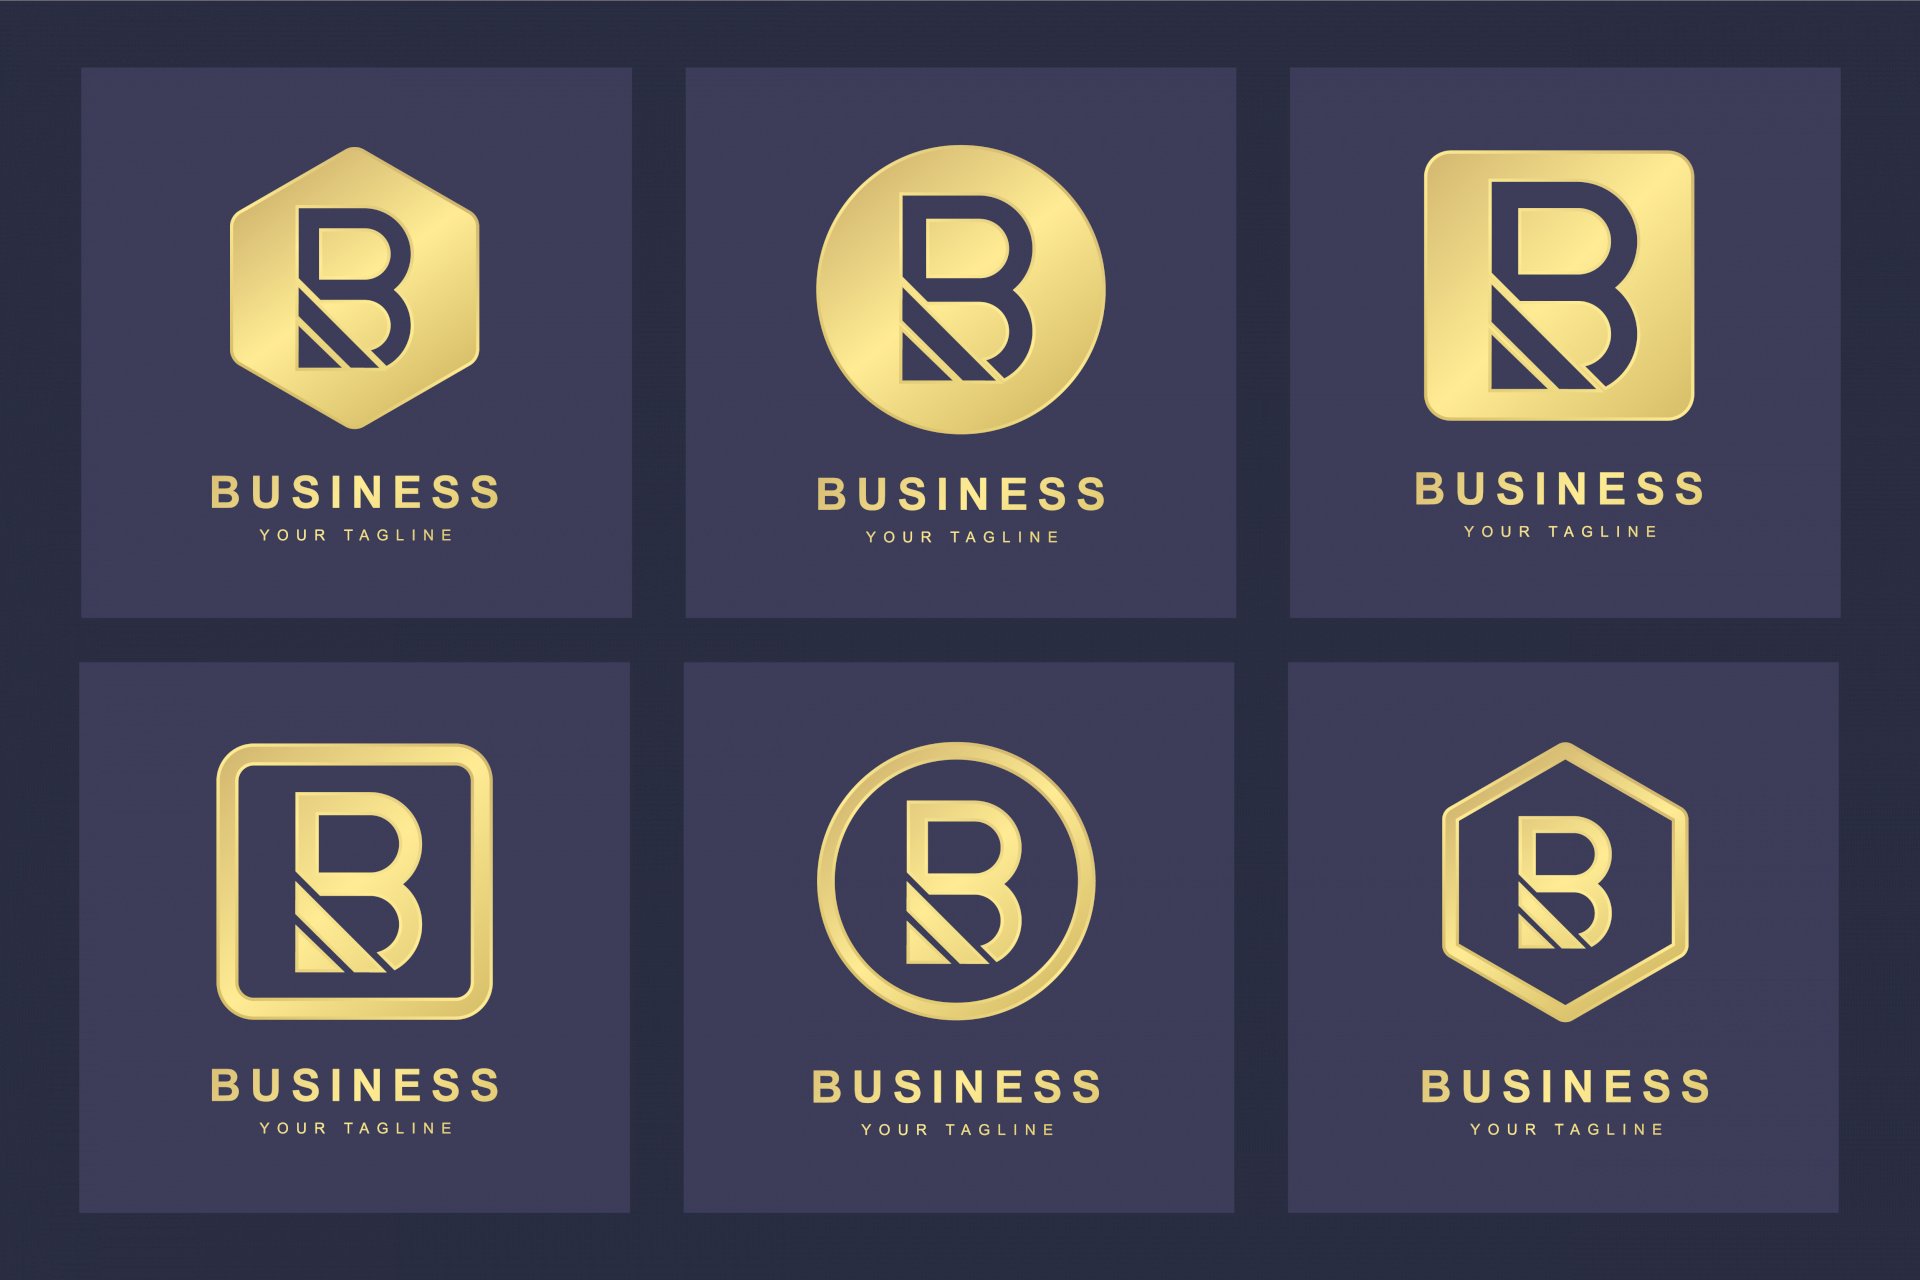 Có những cách nào để biến tấu logo chữ B trong thiết kế cách điệu?
